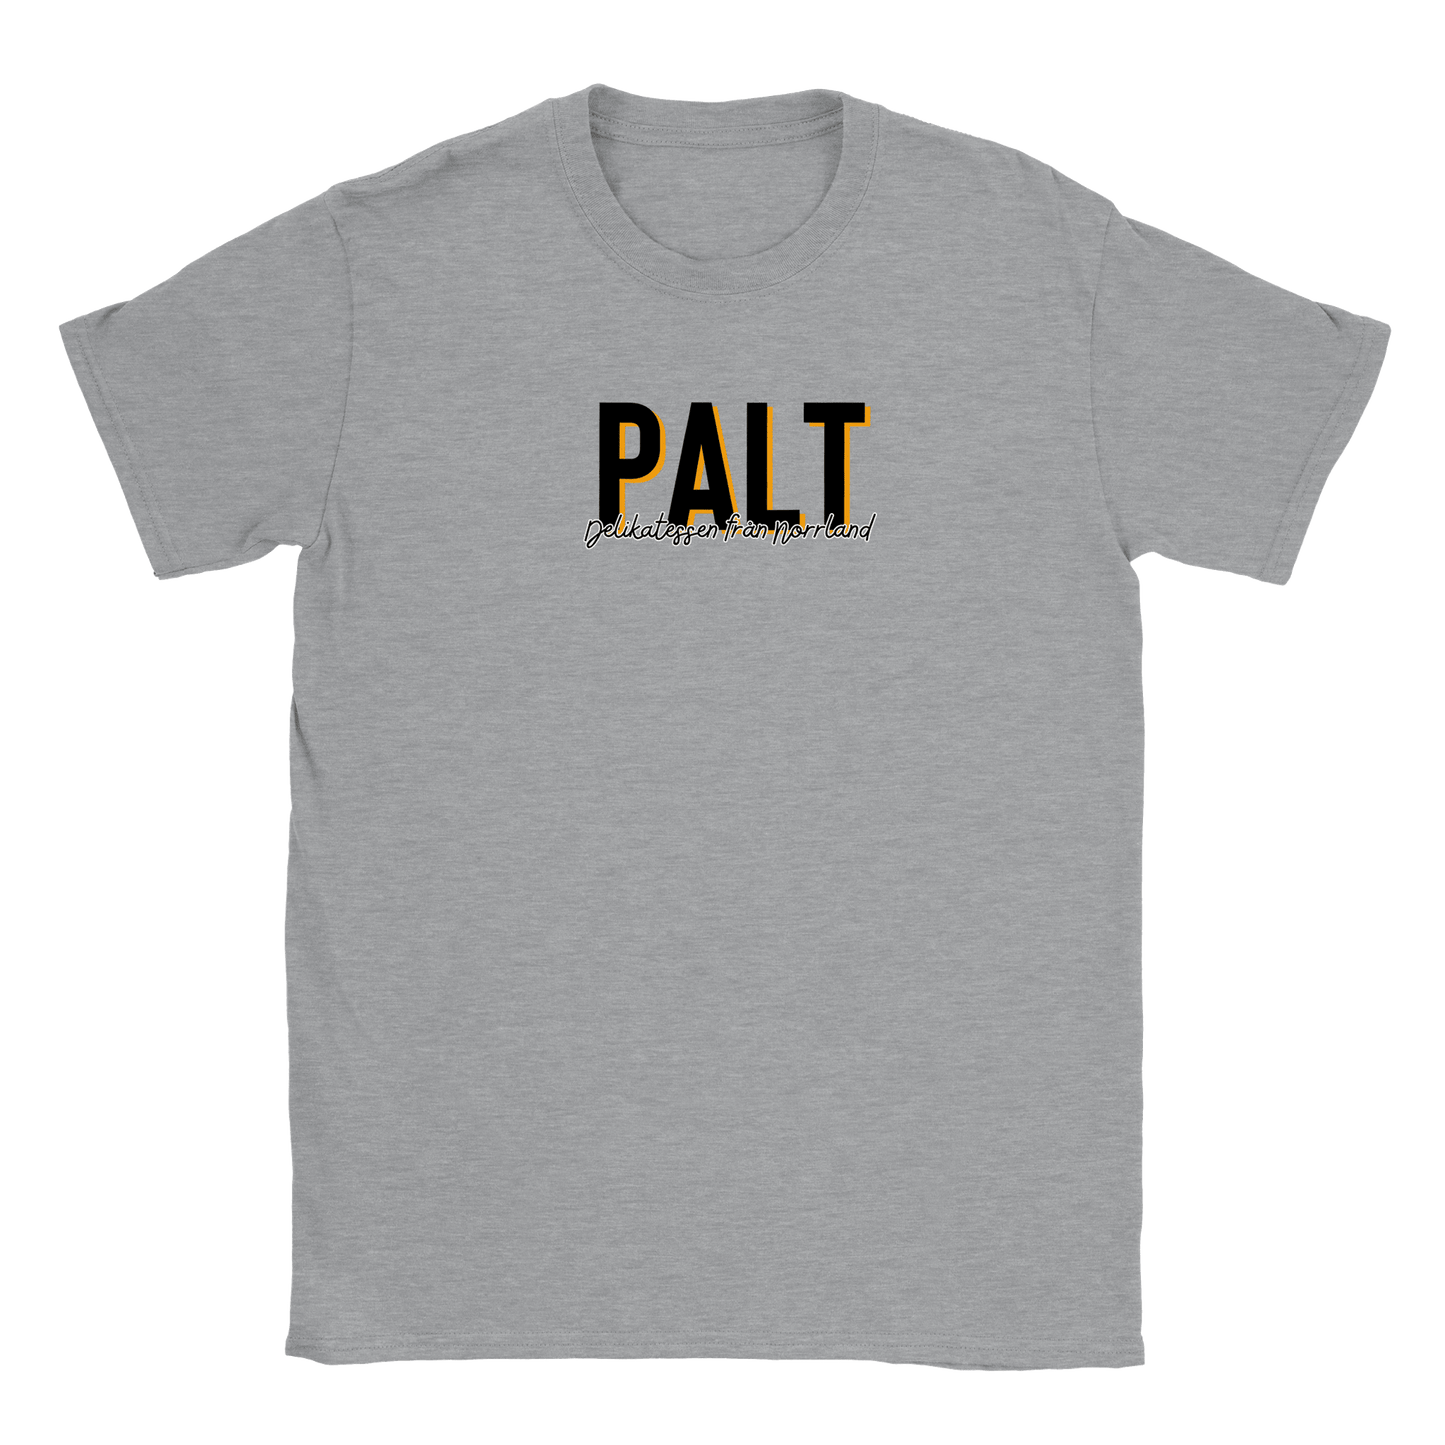 Palt - T-shirt Grå